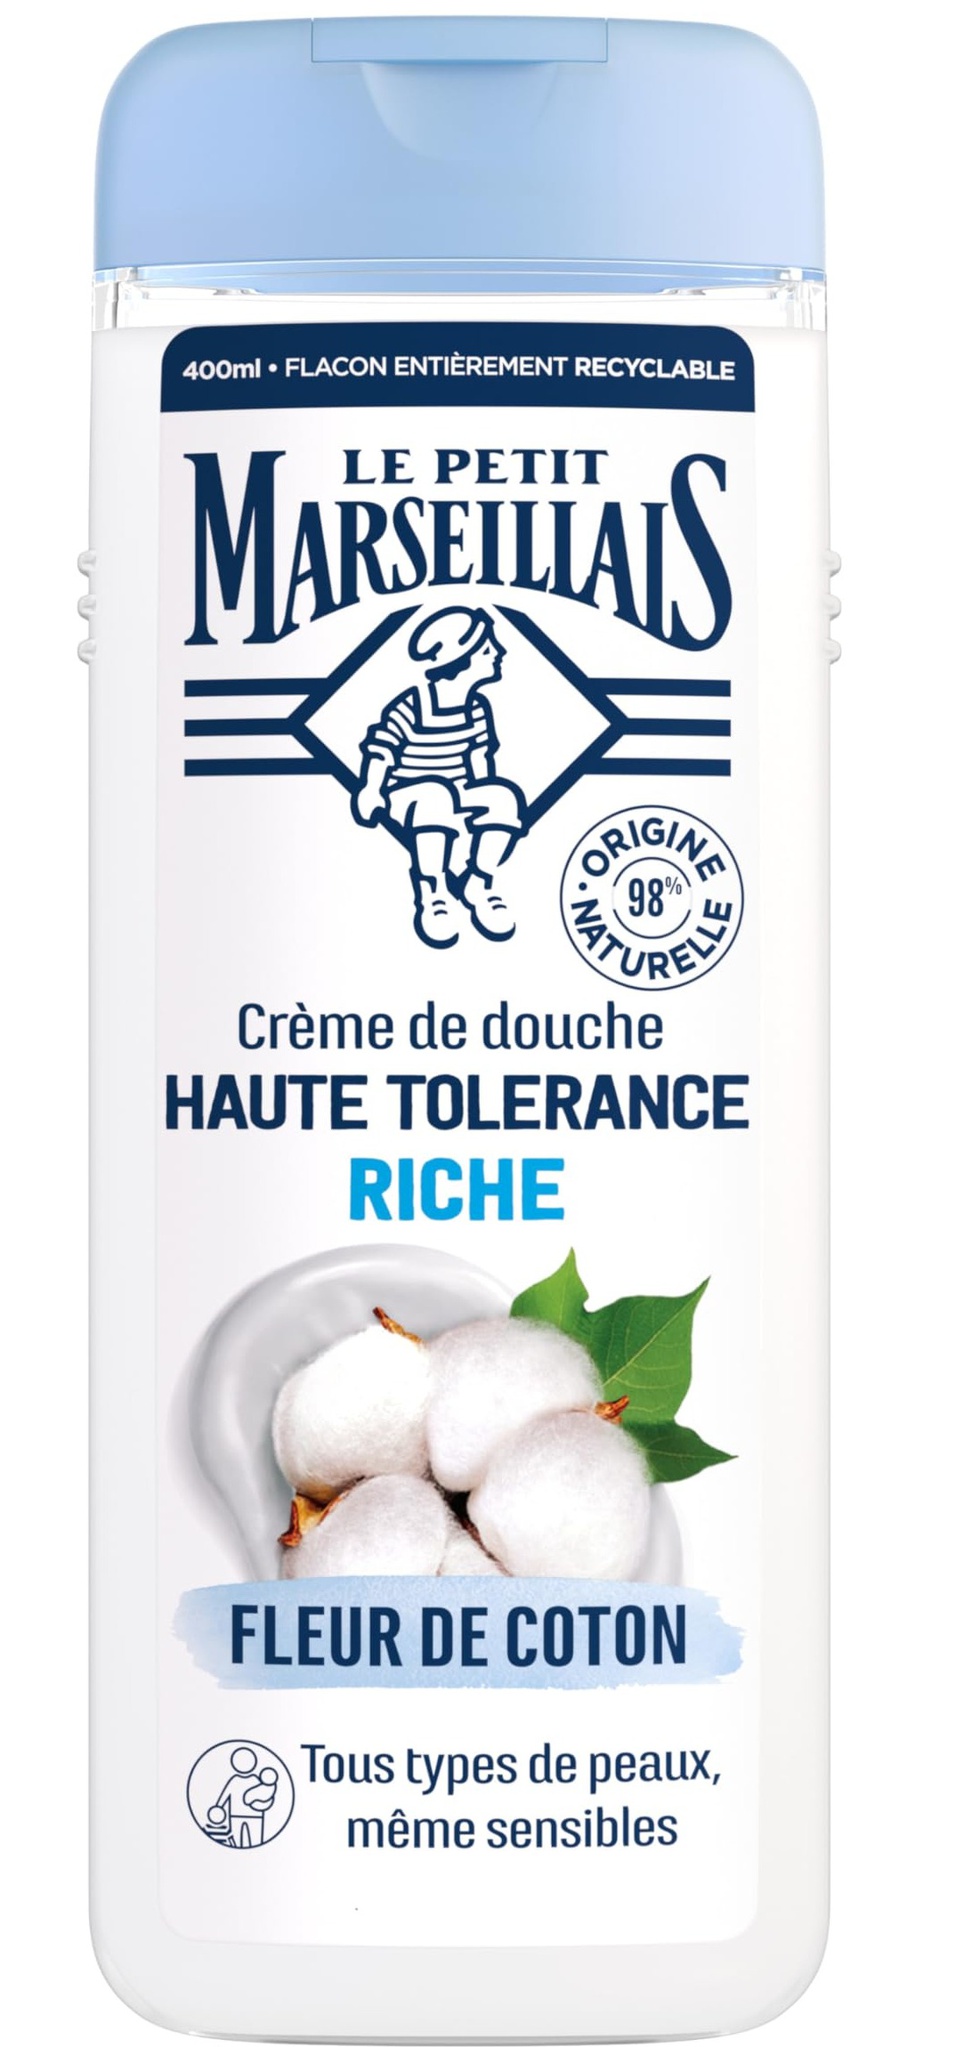 Le Petit Marseillais High Tolerance Rich Shower Cream, Cotton Flower